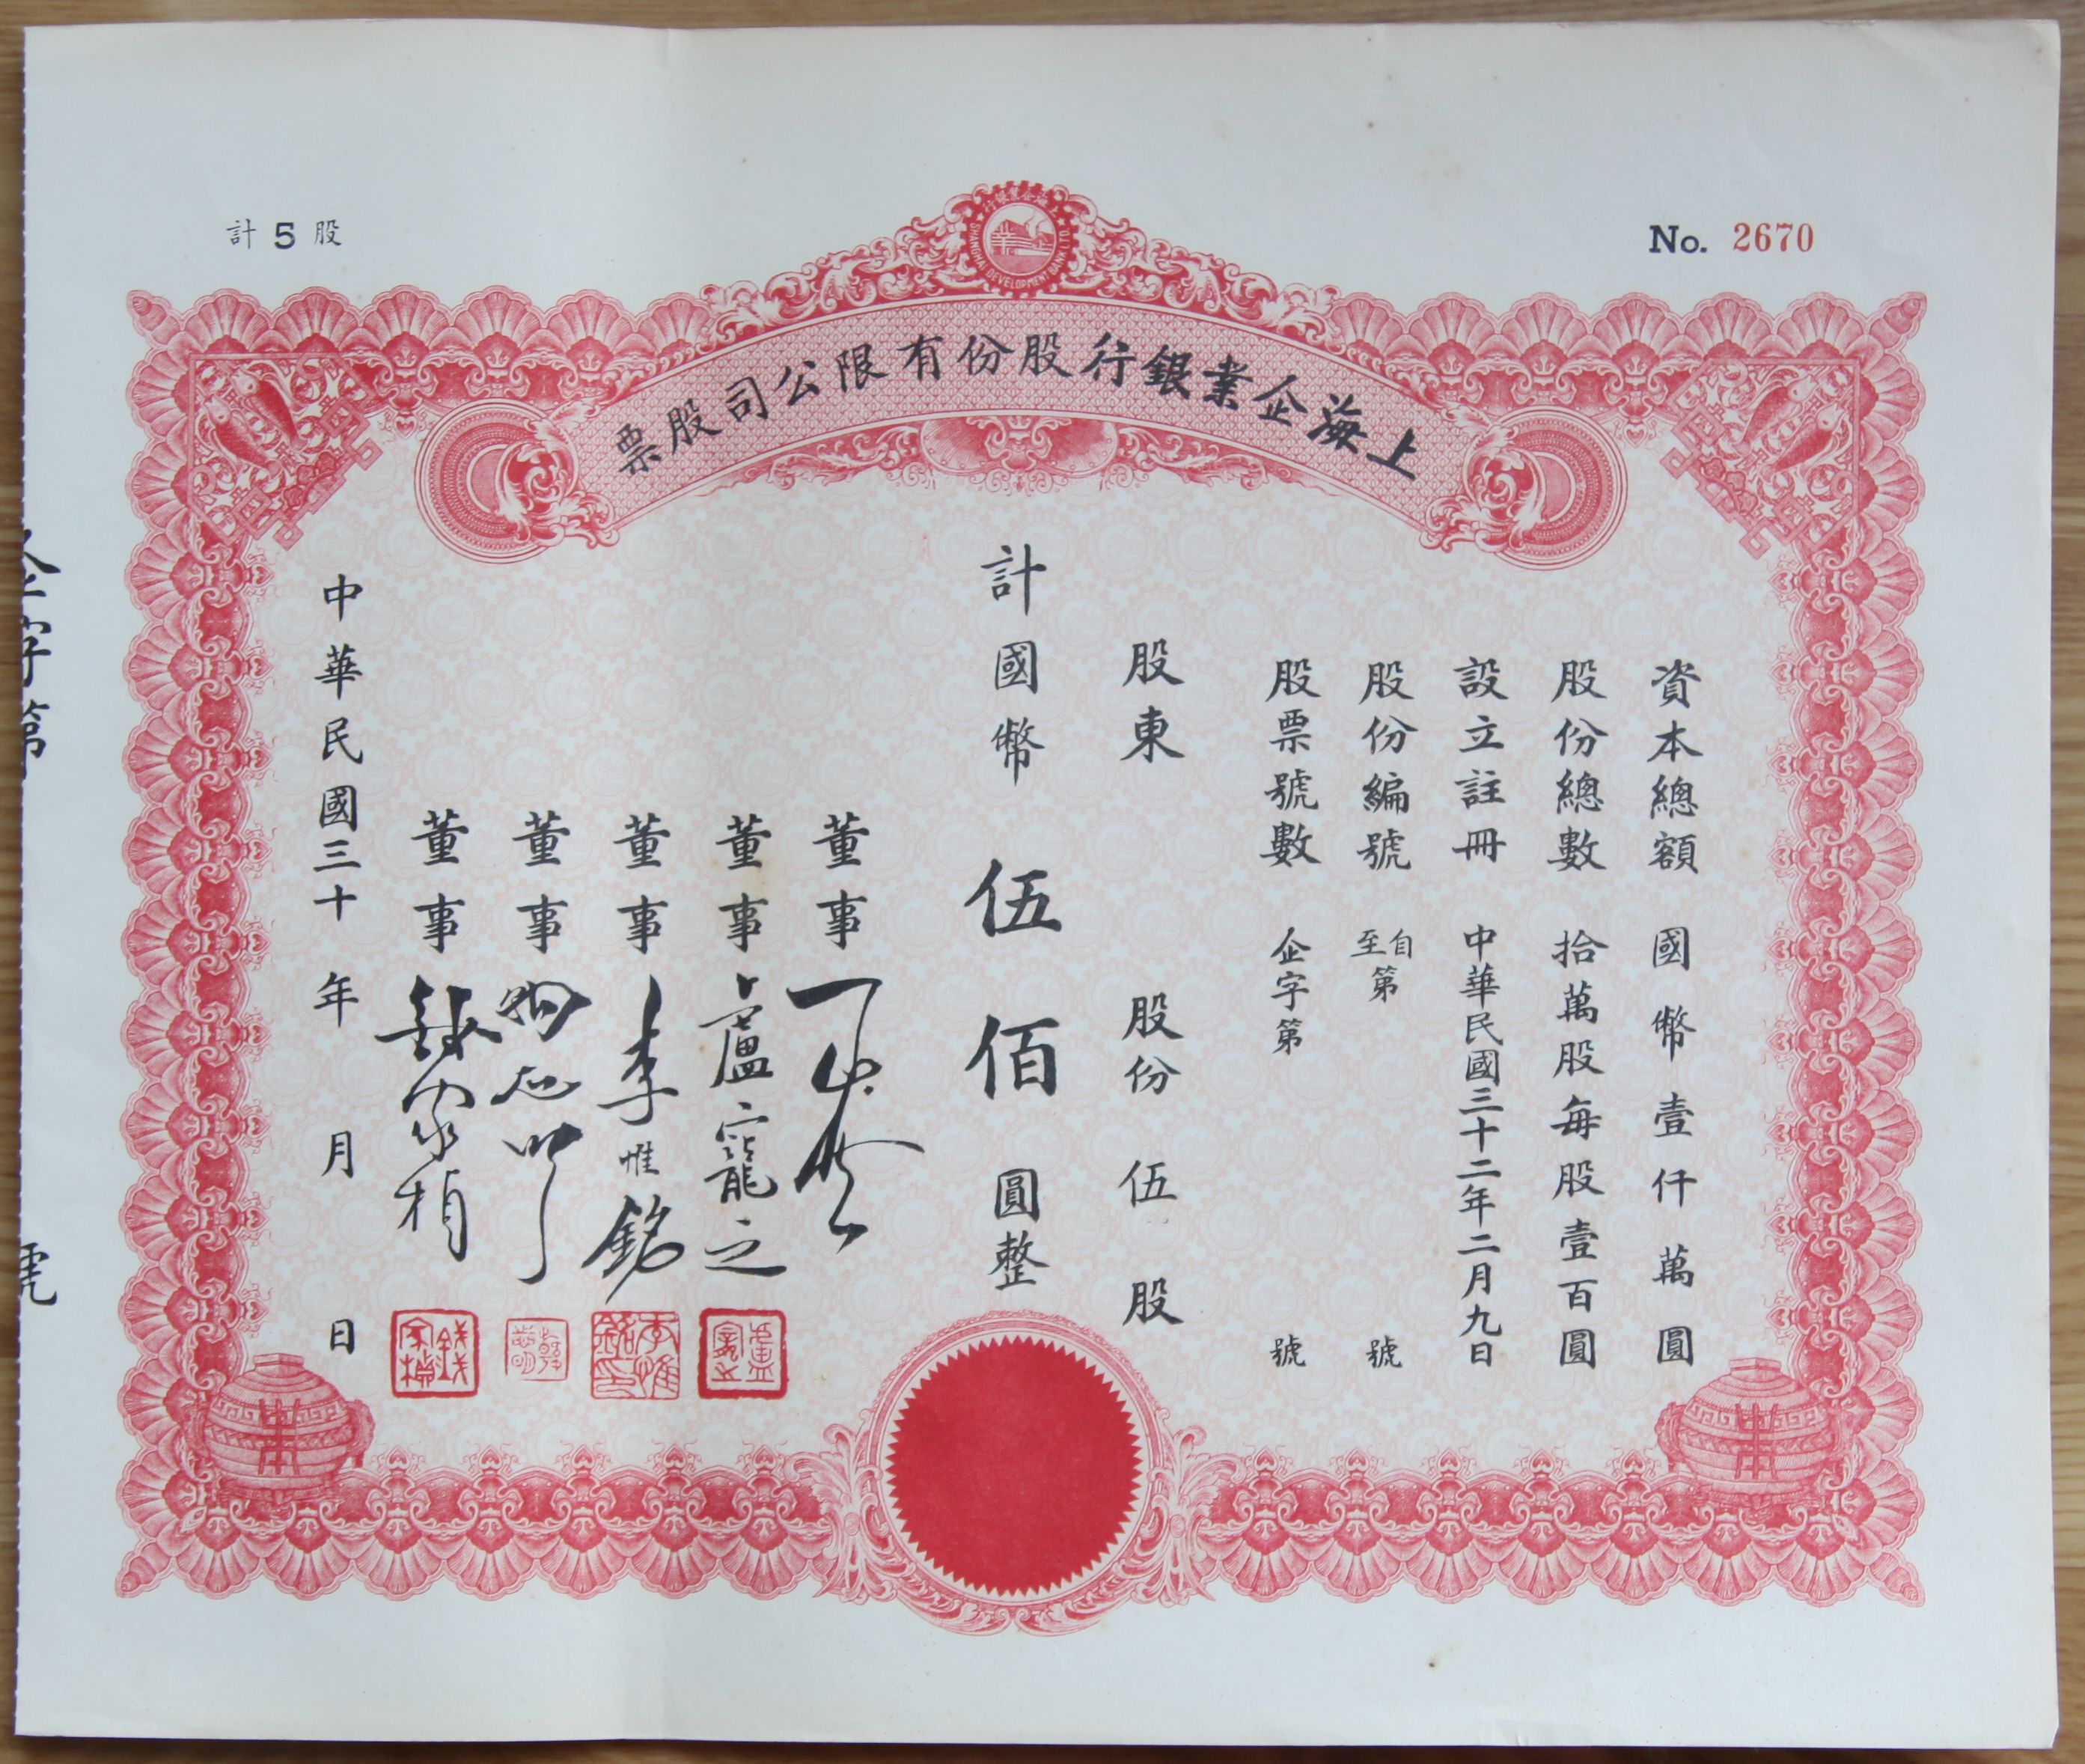 S1303, Stock Certificate of Shanghai Enterprise Bank Ltd, 1940